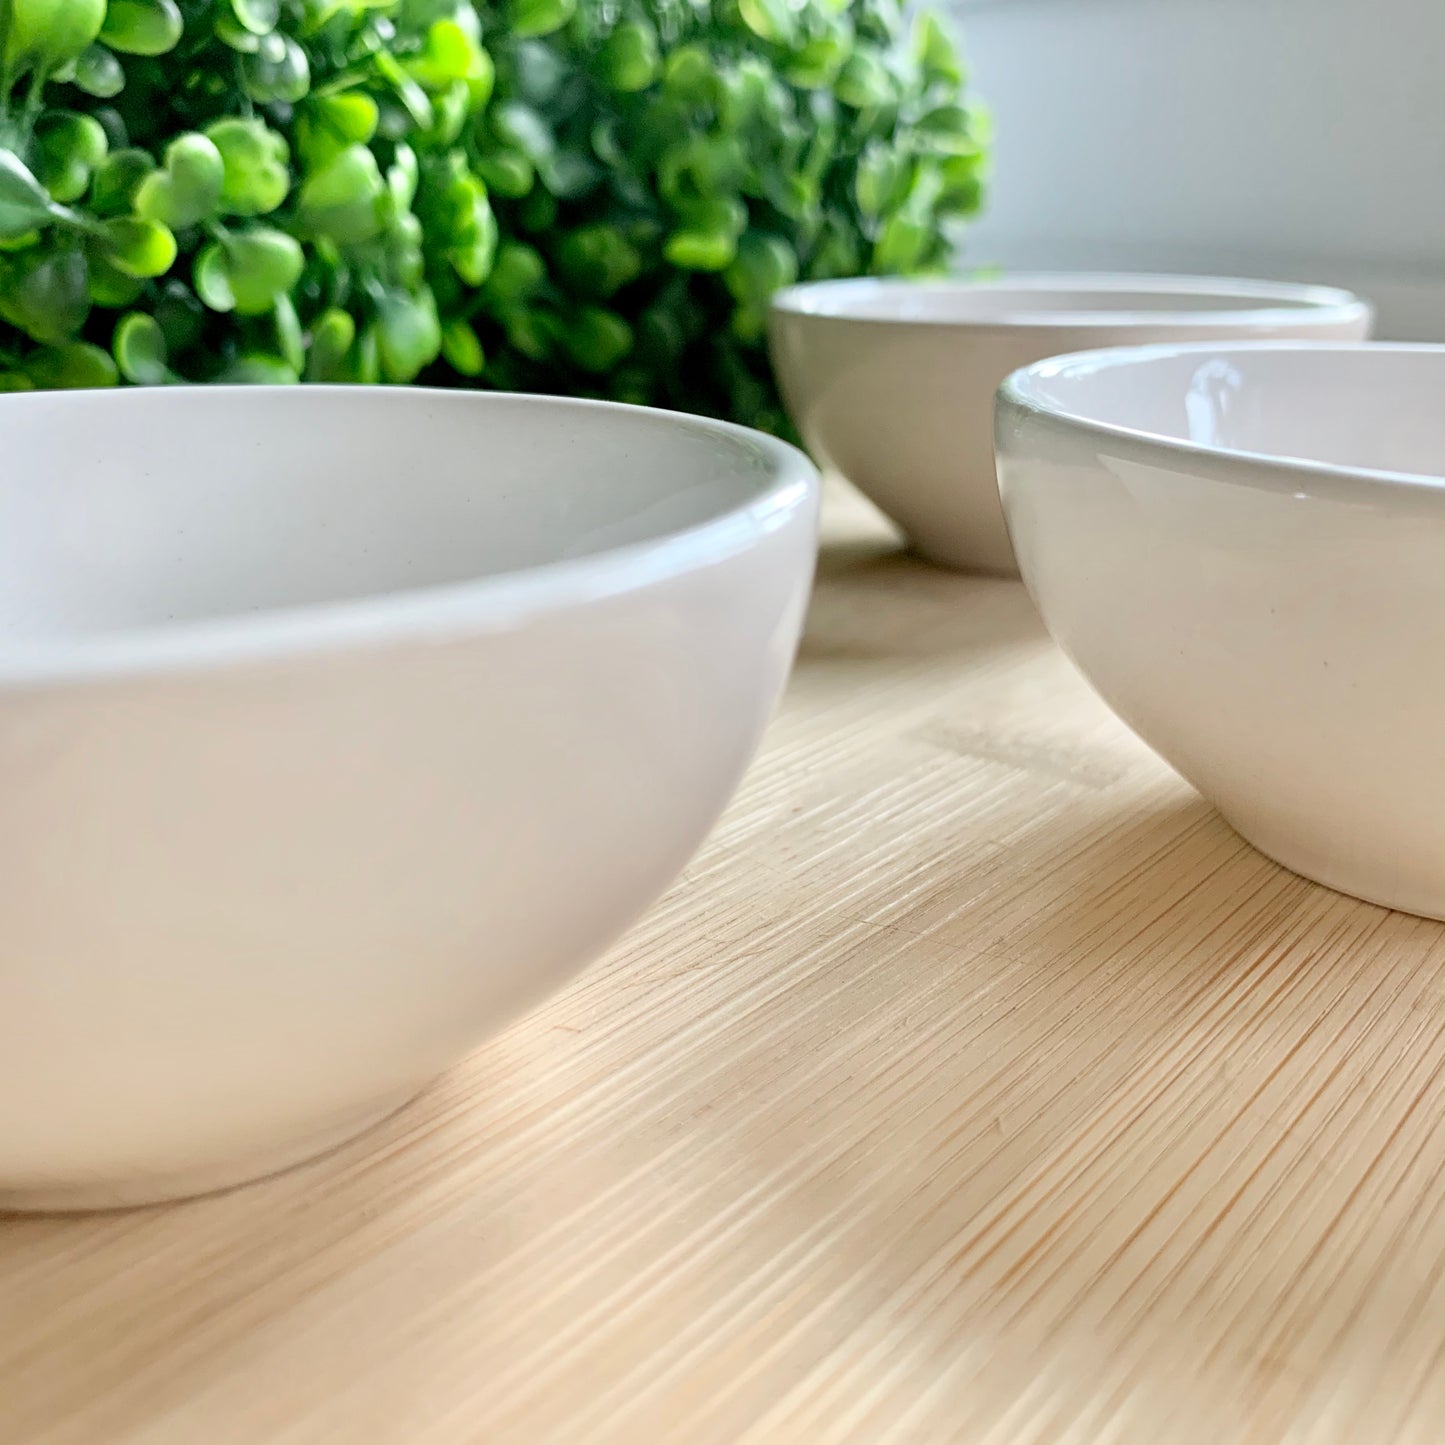 White ceramic snack / dip bowls